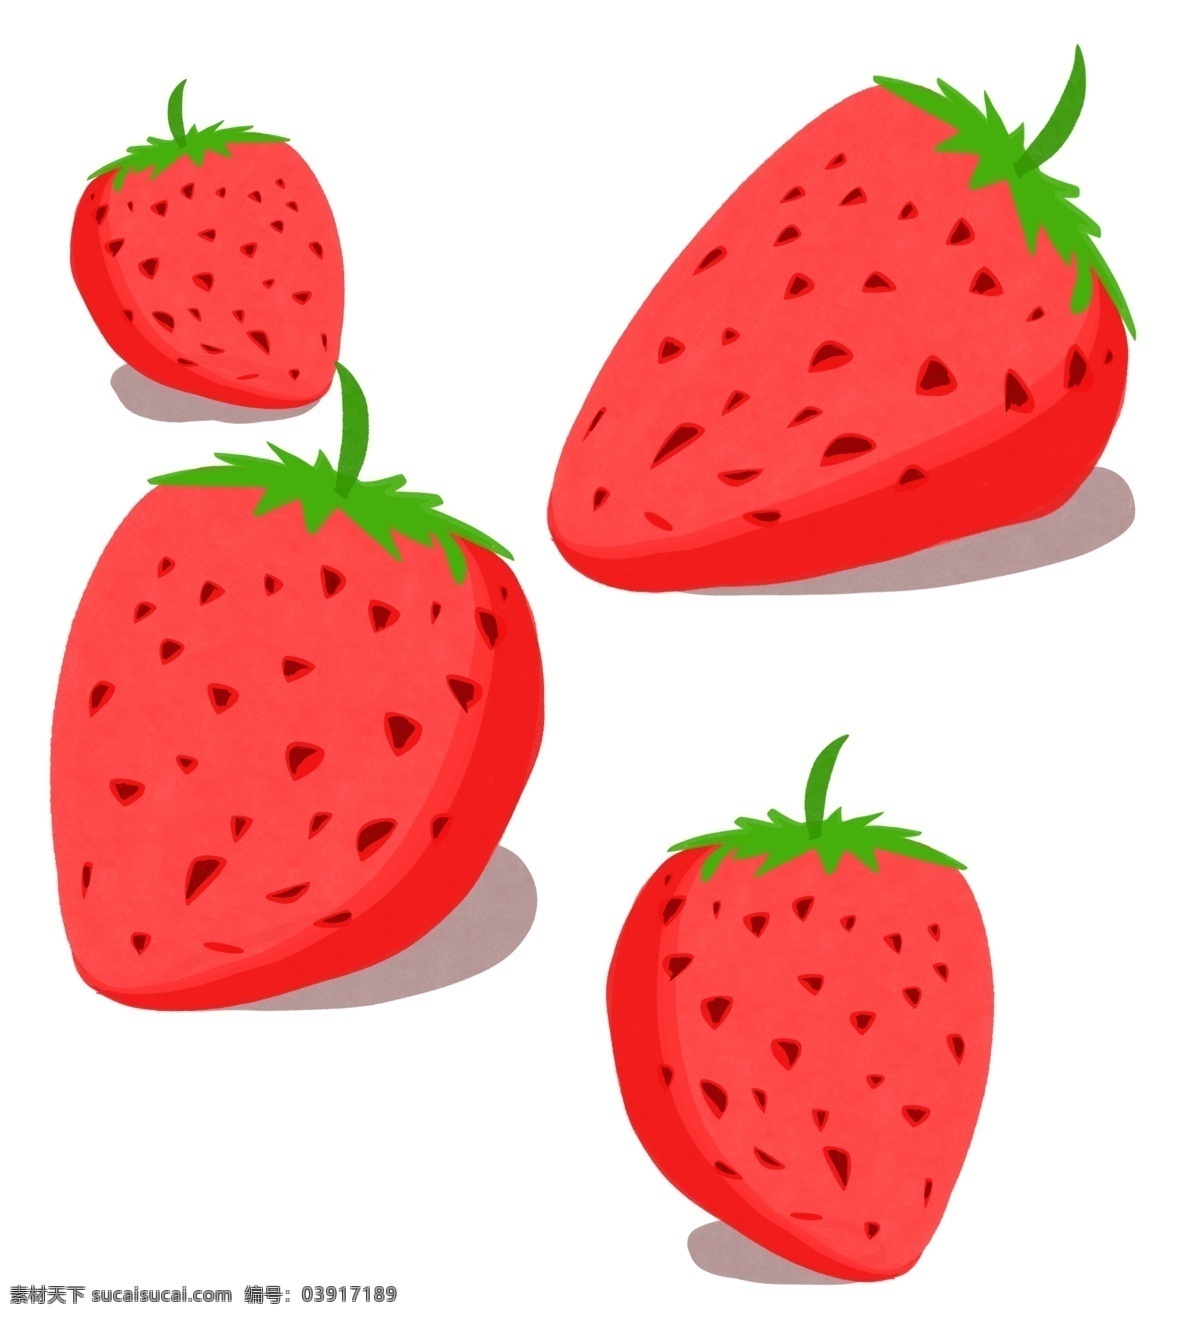 草莓 夏季 主题 手绘 风格 水果 水果草莓 夏季主题 手绘风格 插画配图 装饰插图 情景插图 夏天 解暑水果